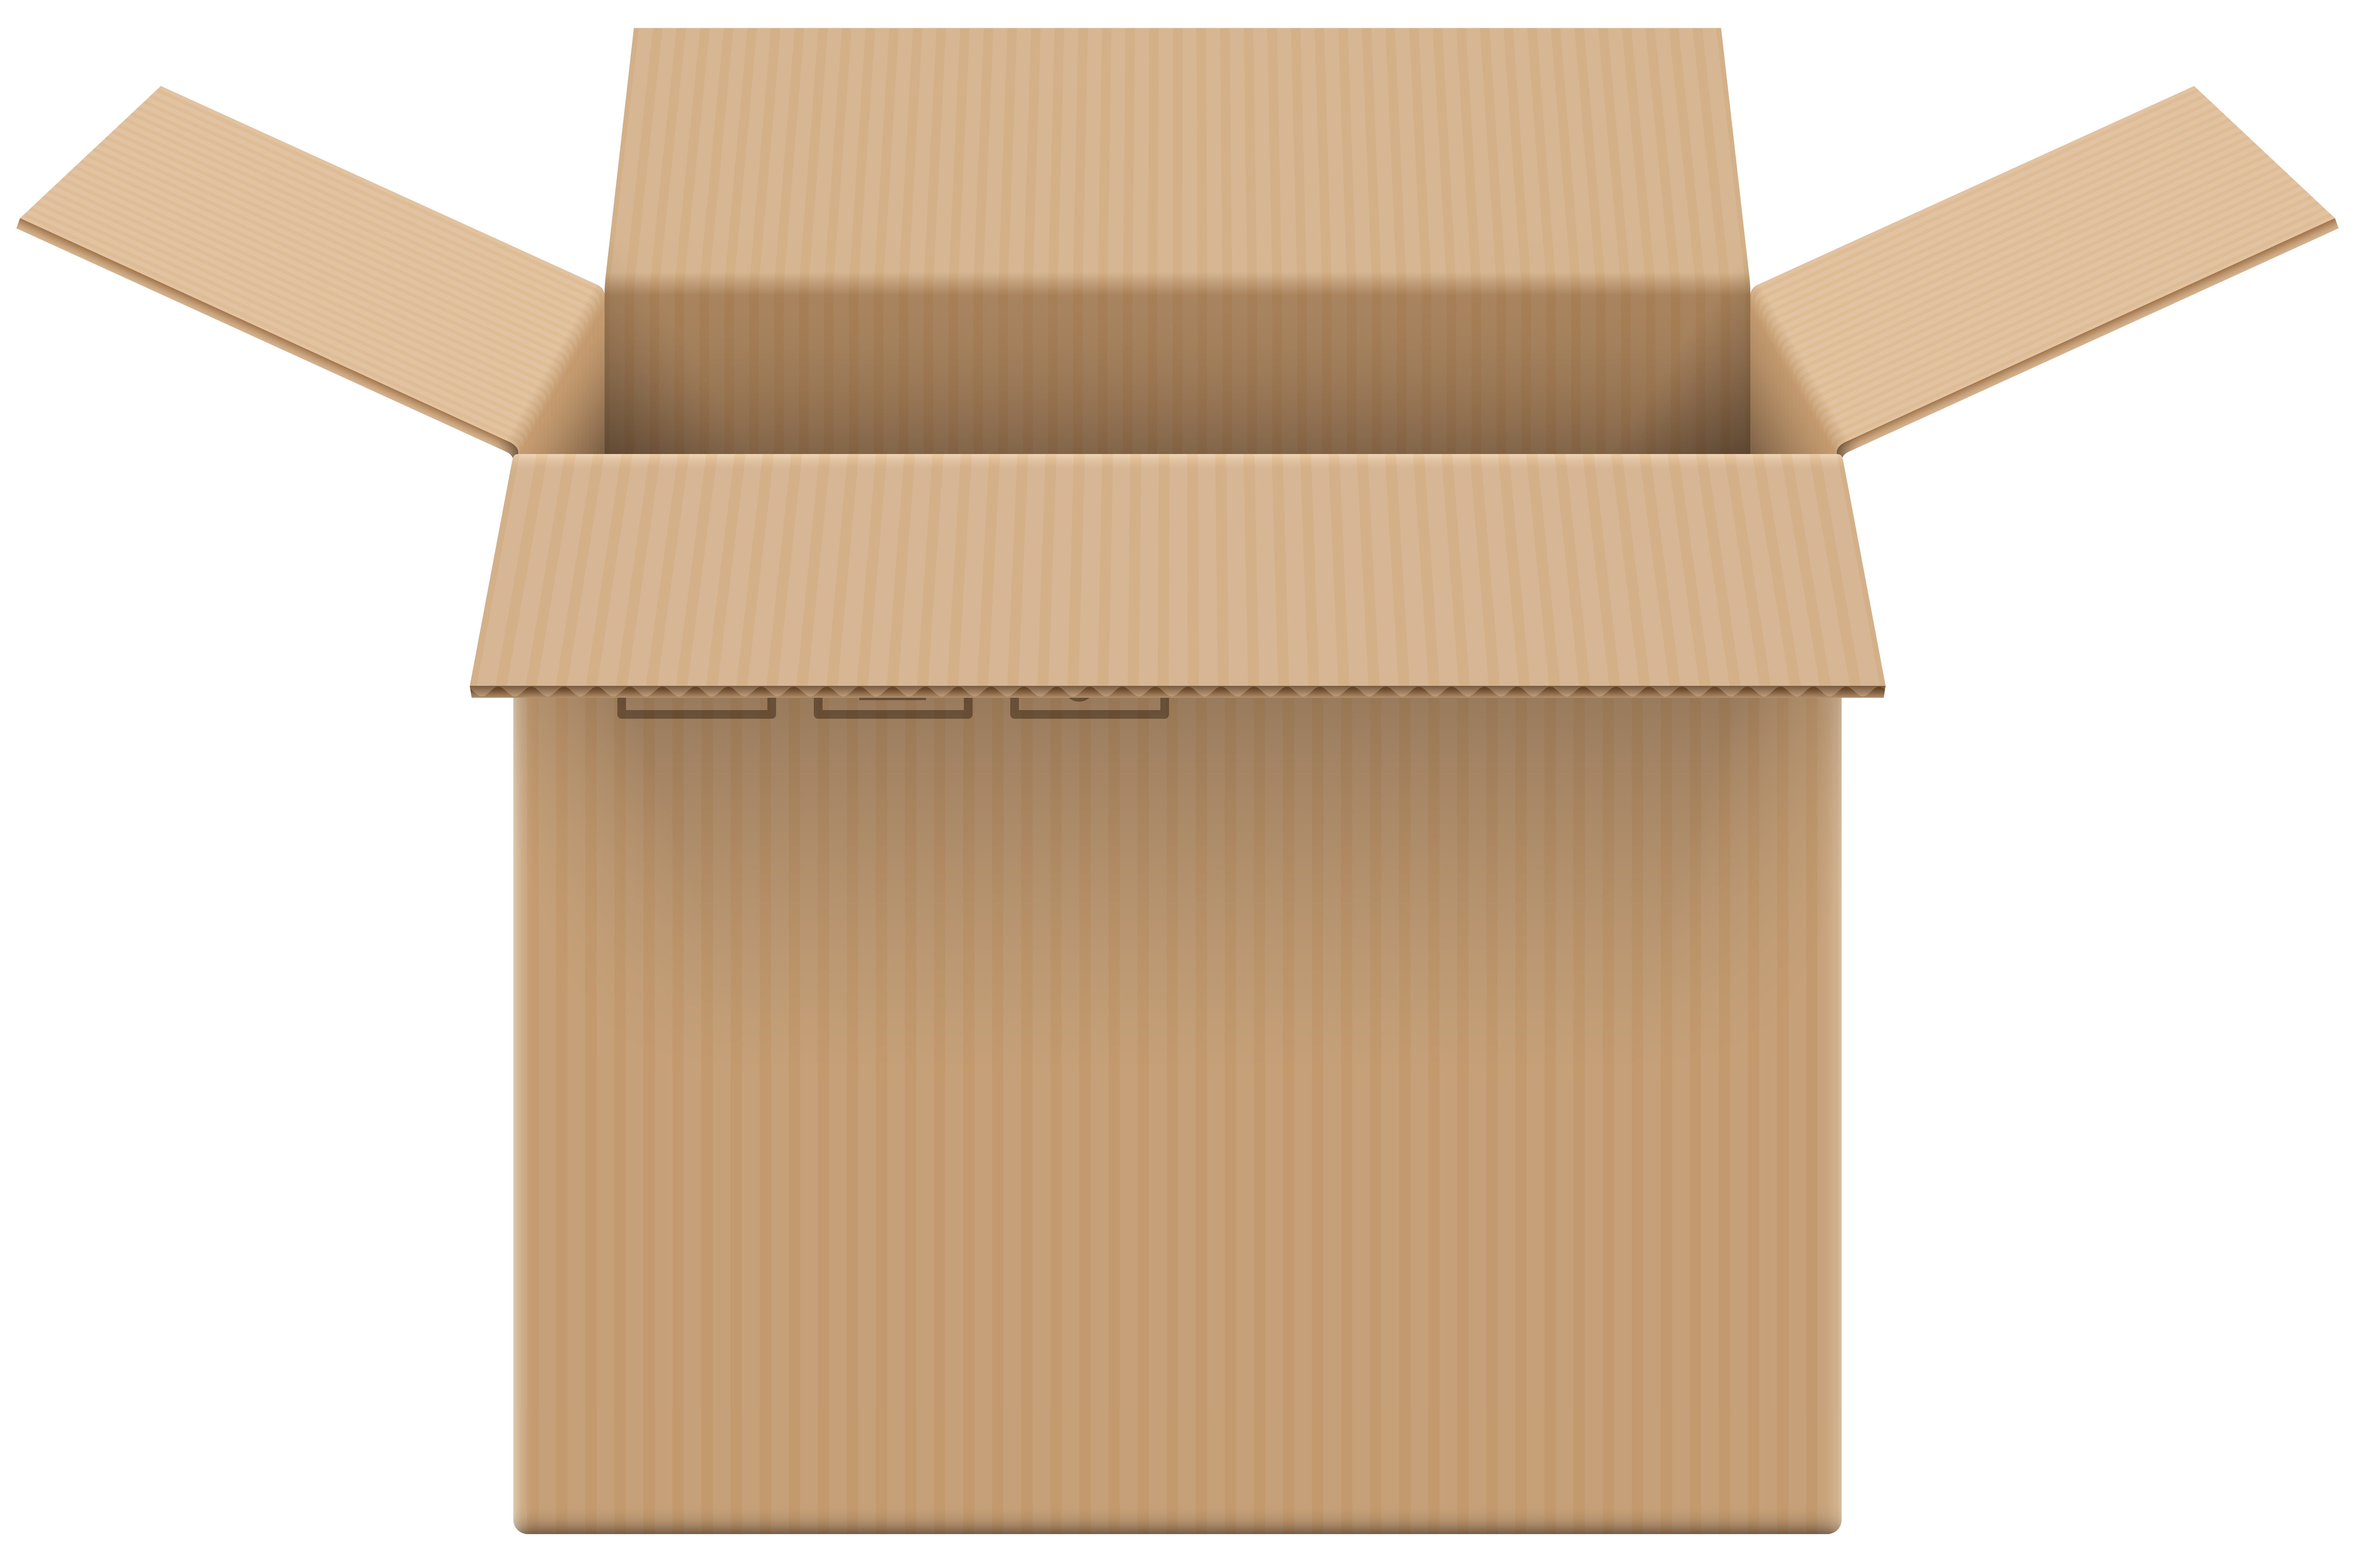 Картонная коробка вид сбоку. Коробка картонная вид спереди. Картонная коробка которая открывается сбоку. Картонные коробки на прозрачном фоне.